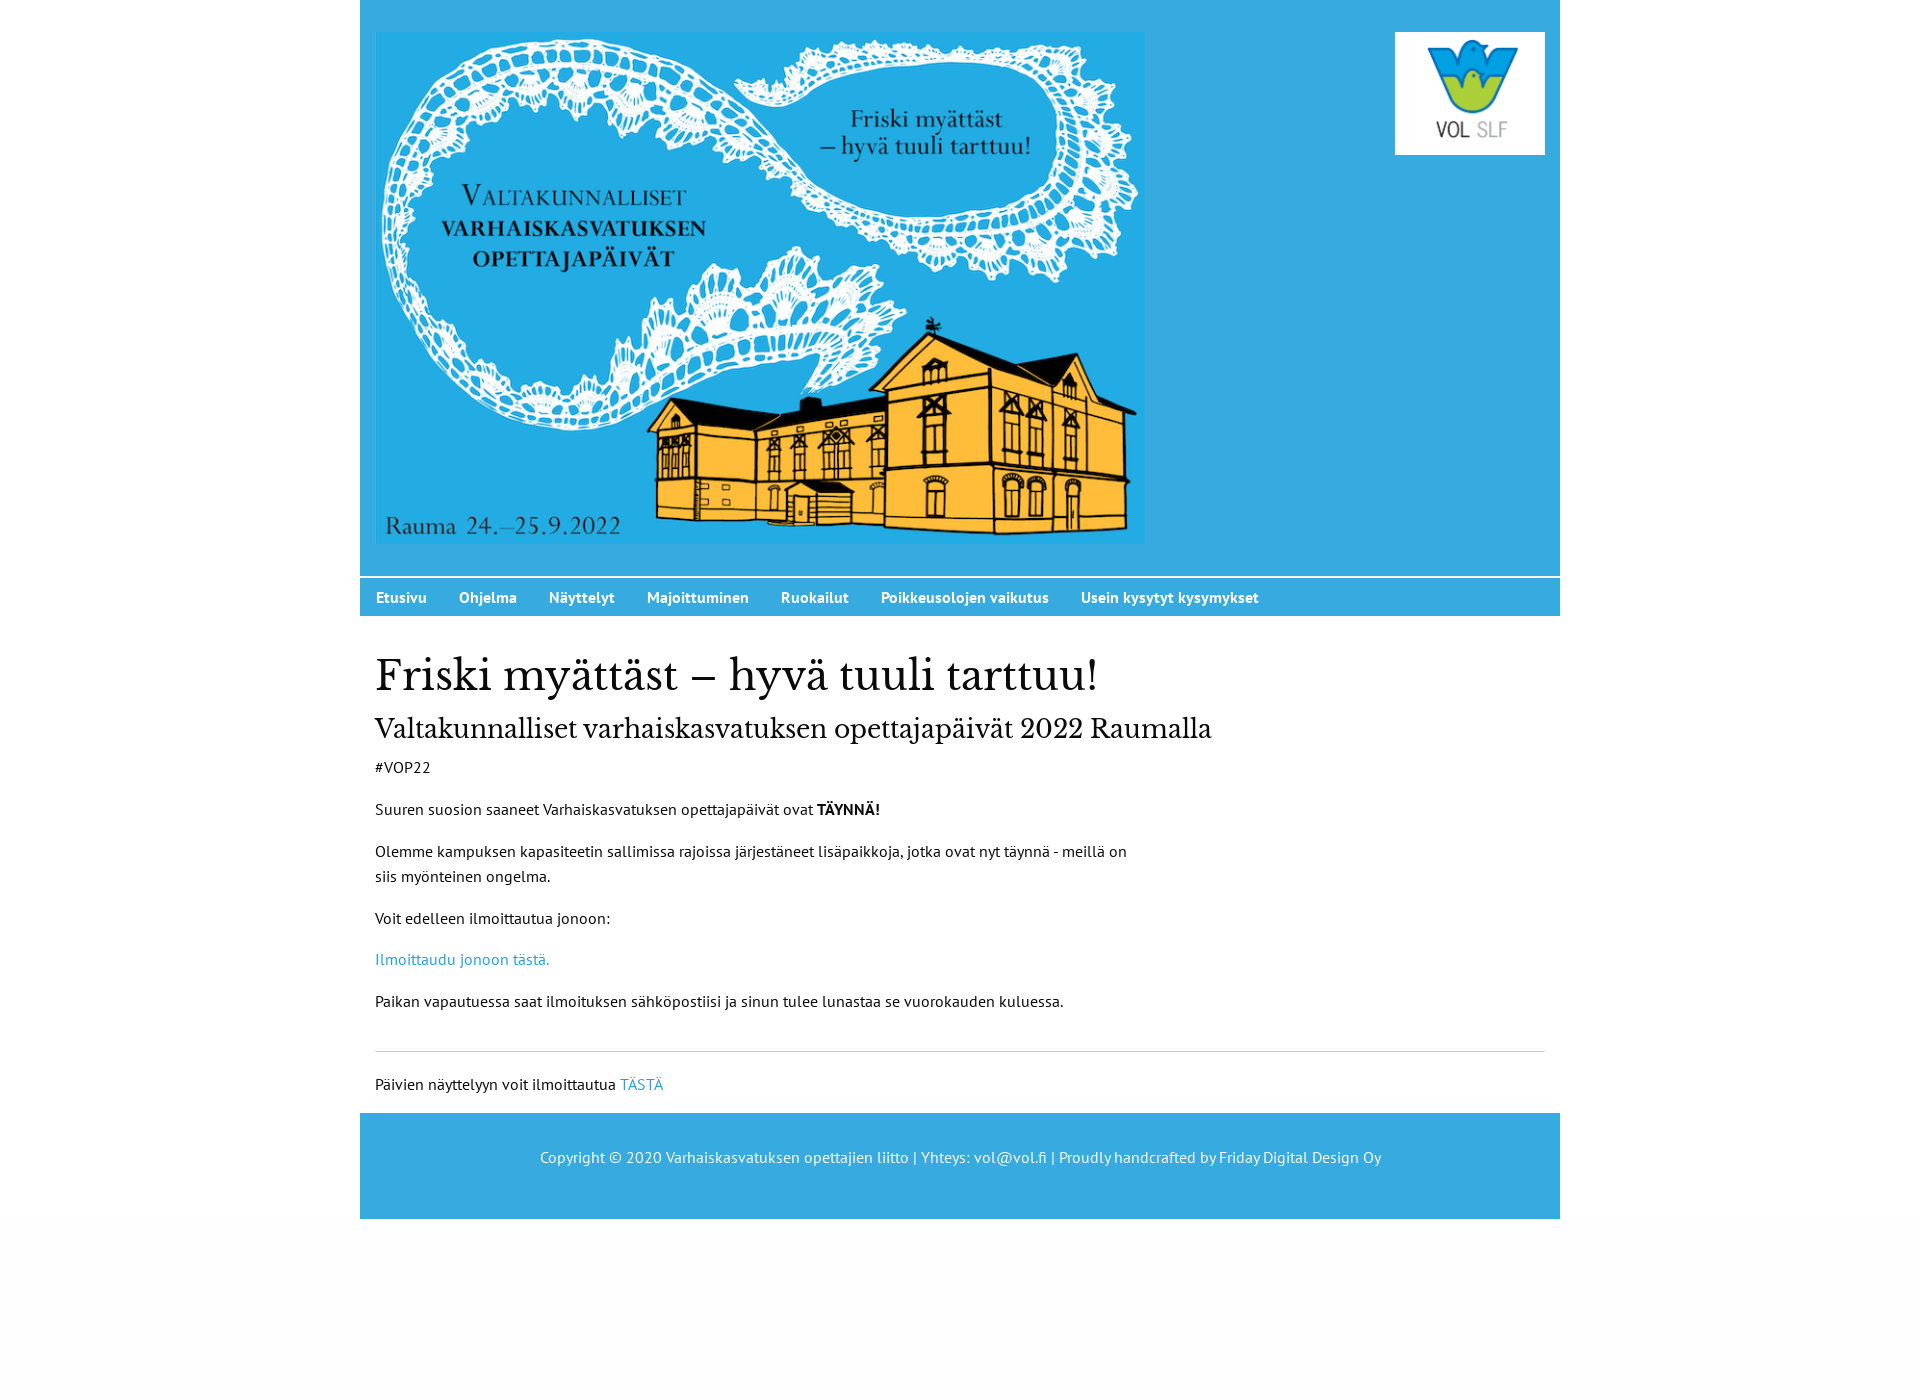 Skärmdump för lastentarhanopettajapaivat.fi